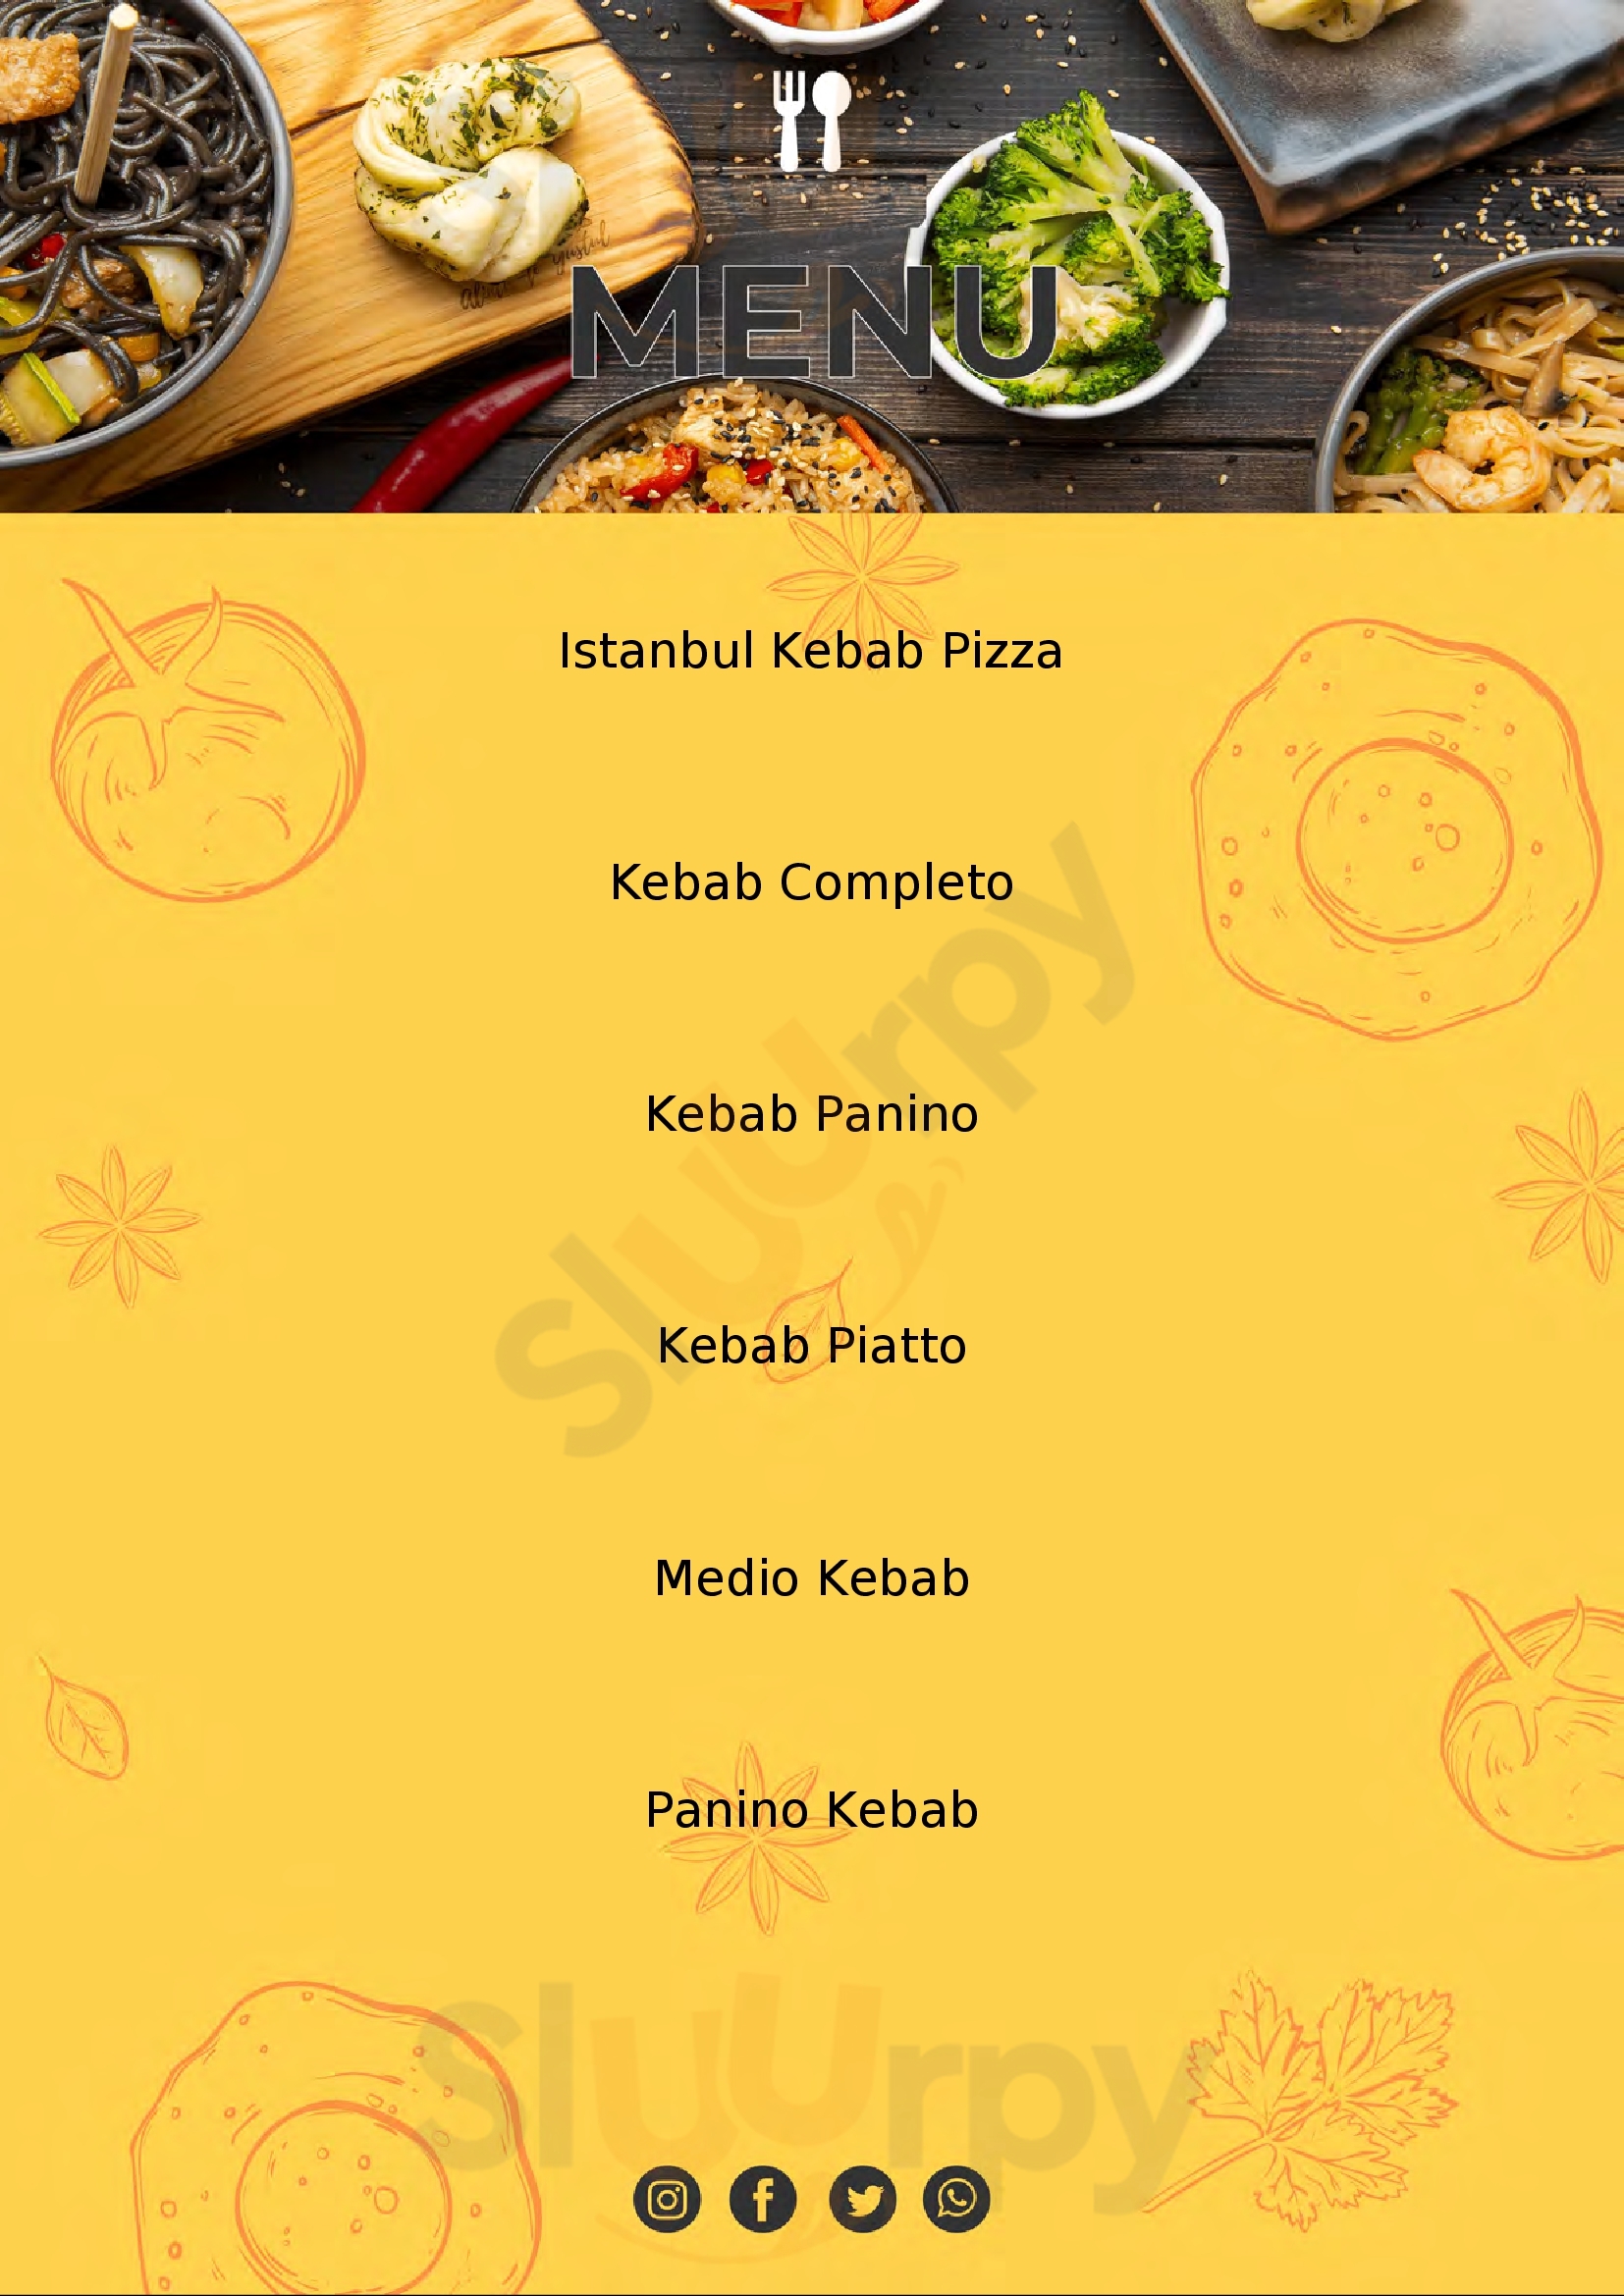 Mounir - Pizzeria & Kebab Palermo menù 1 pagina